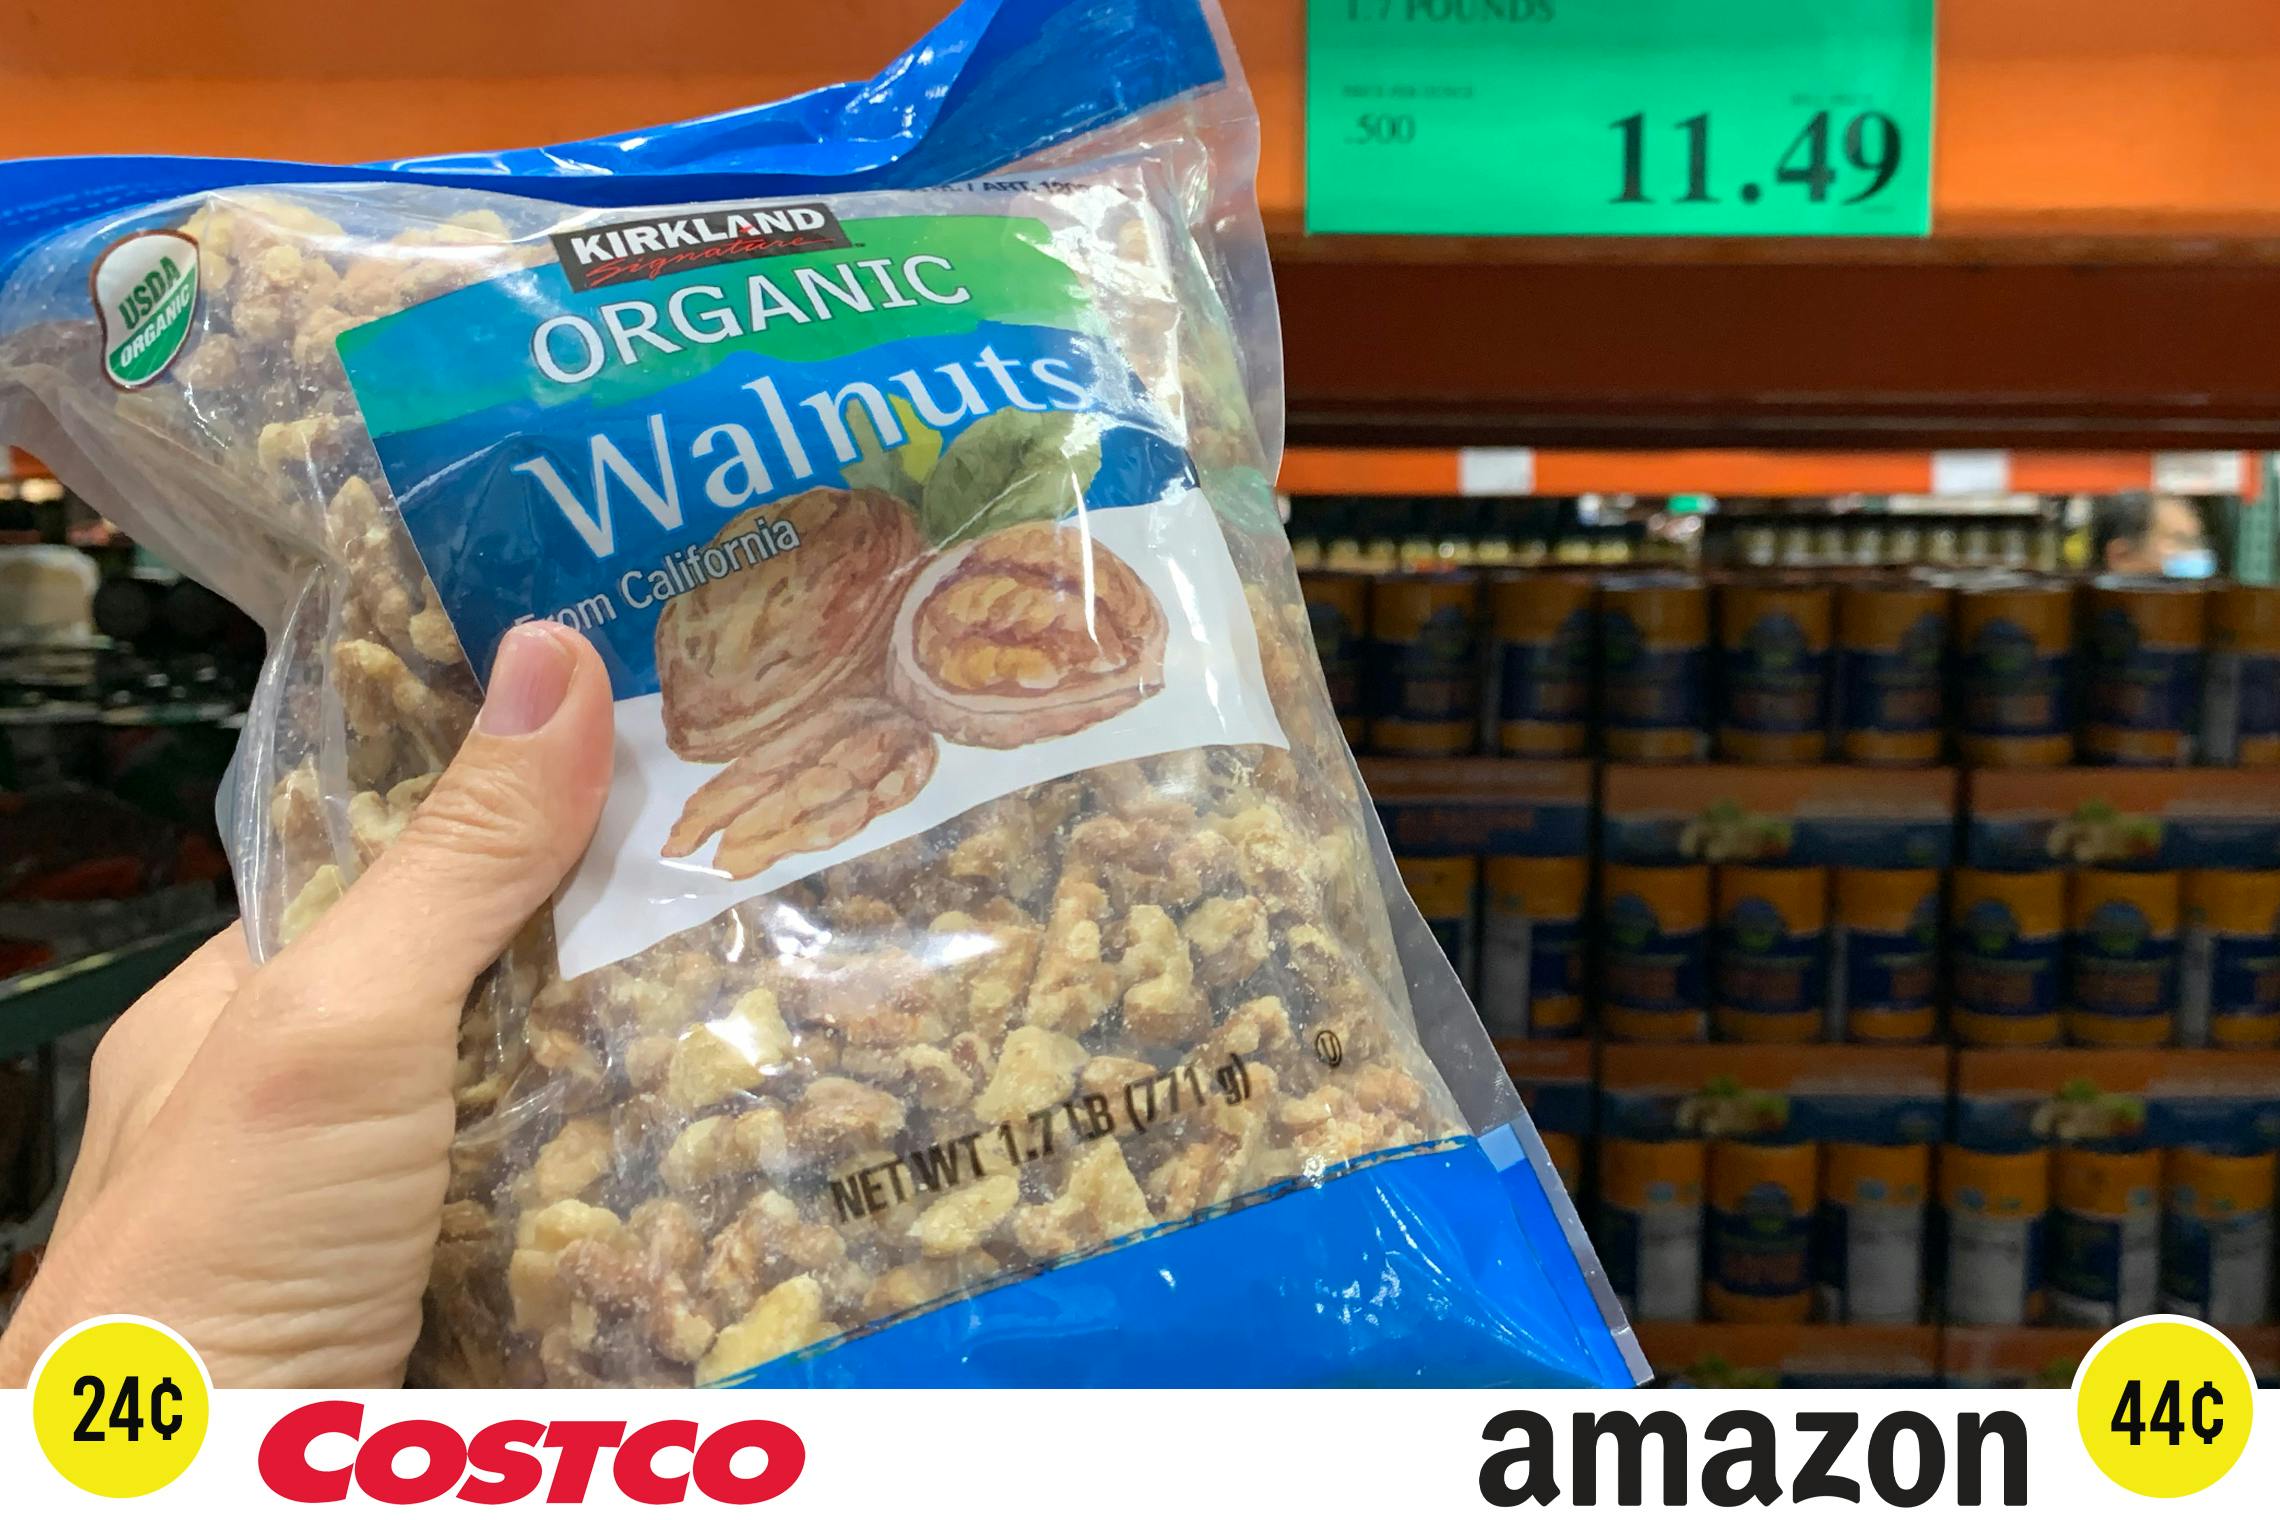 Kirkland brand organic walnuts at Costco